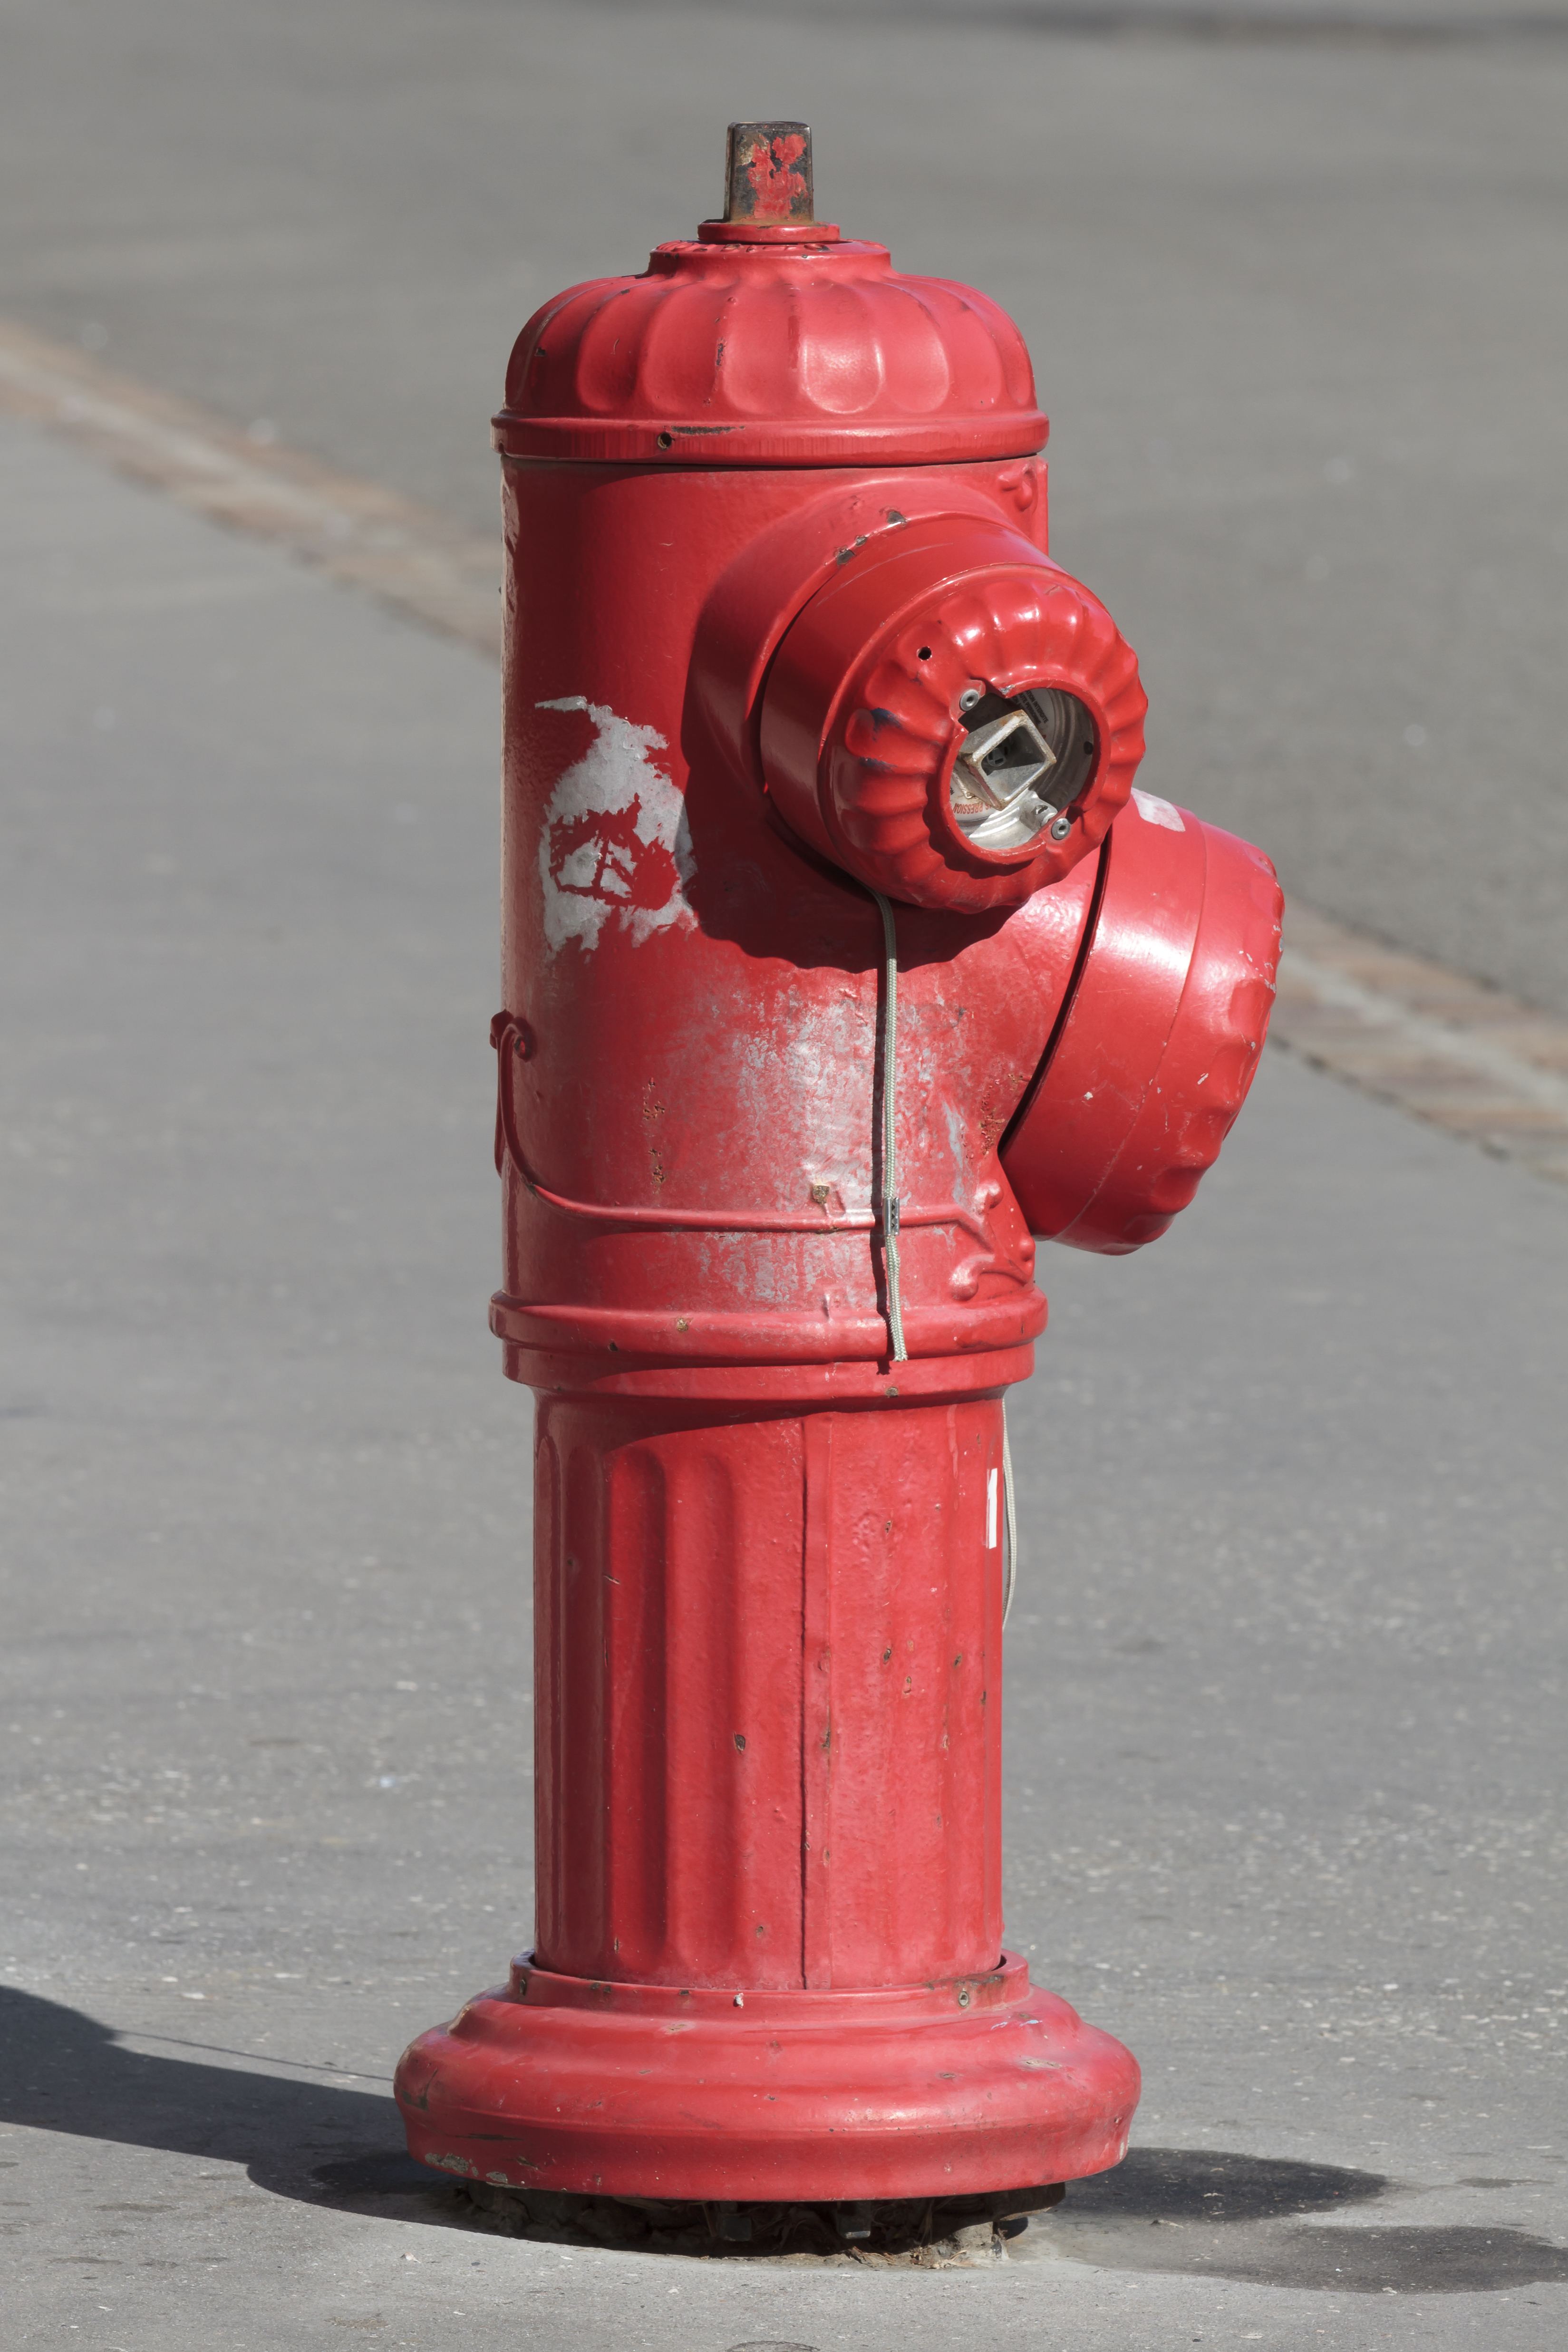 Toulouse - Fire hydrant in Compans Caffarelli